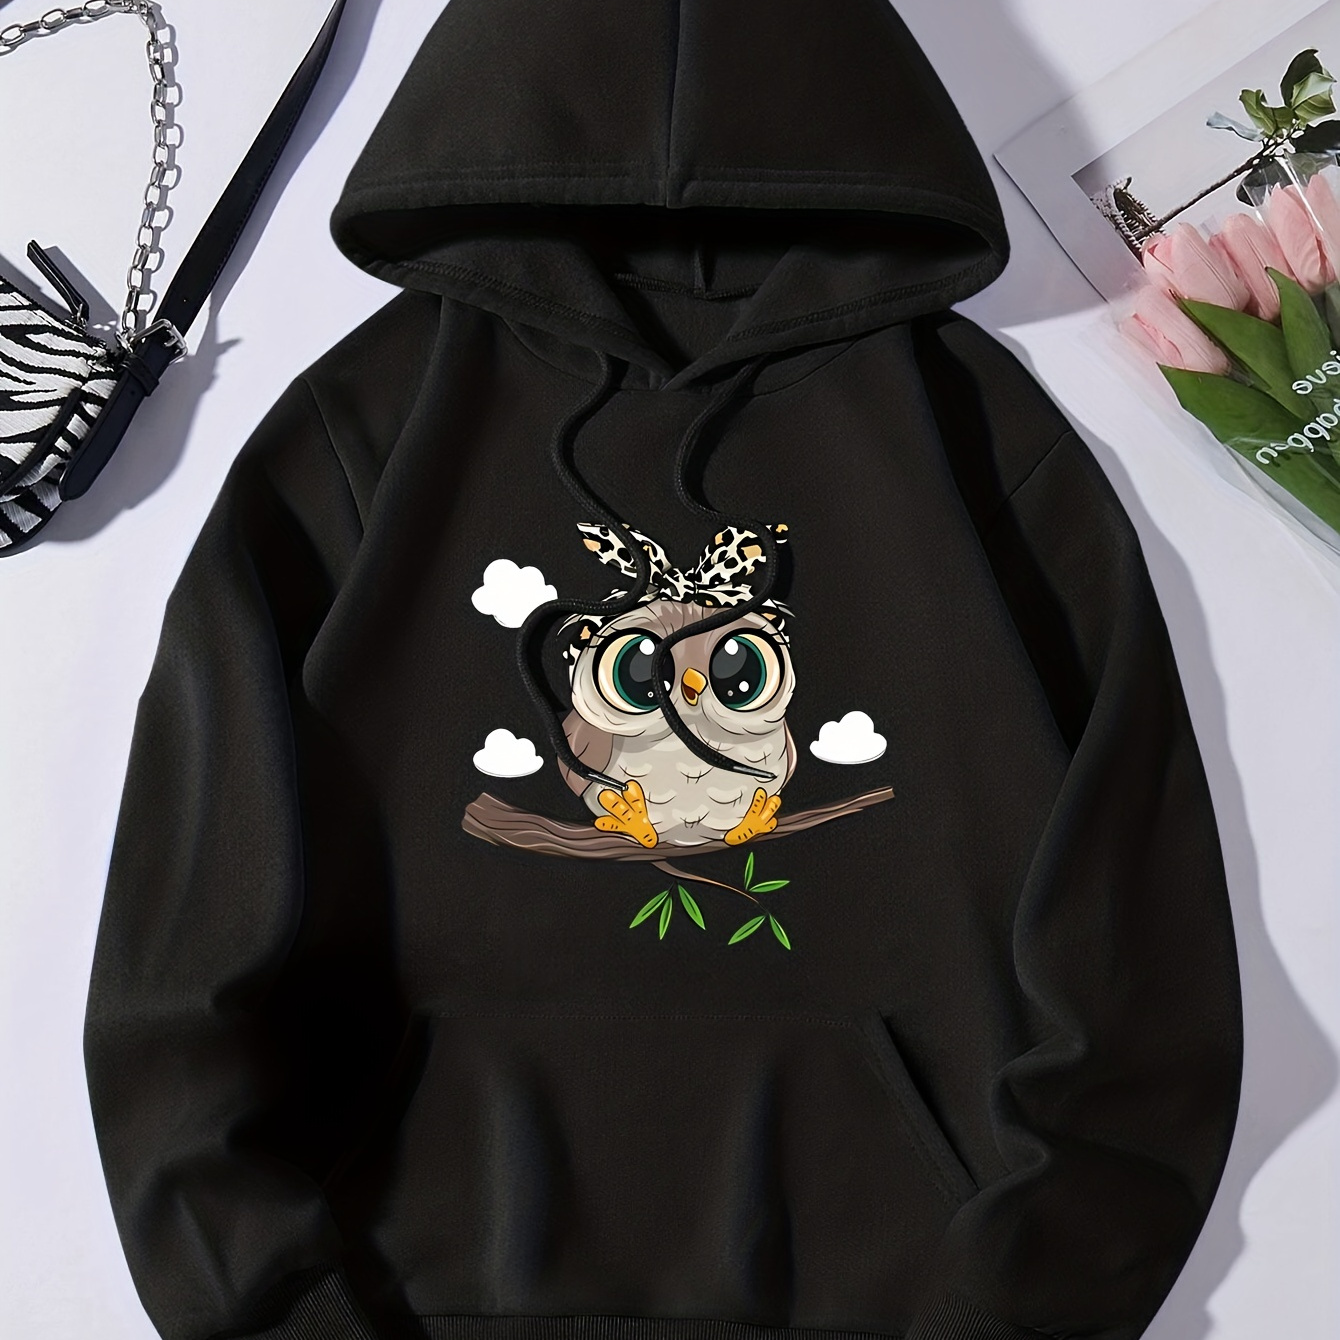 

Cute Cartoon Owl Print Hoodie, Casual Pocket Long Sleeve Drawstring Hoodies Sweatshirt, Women's Clothing